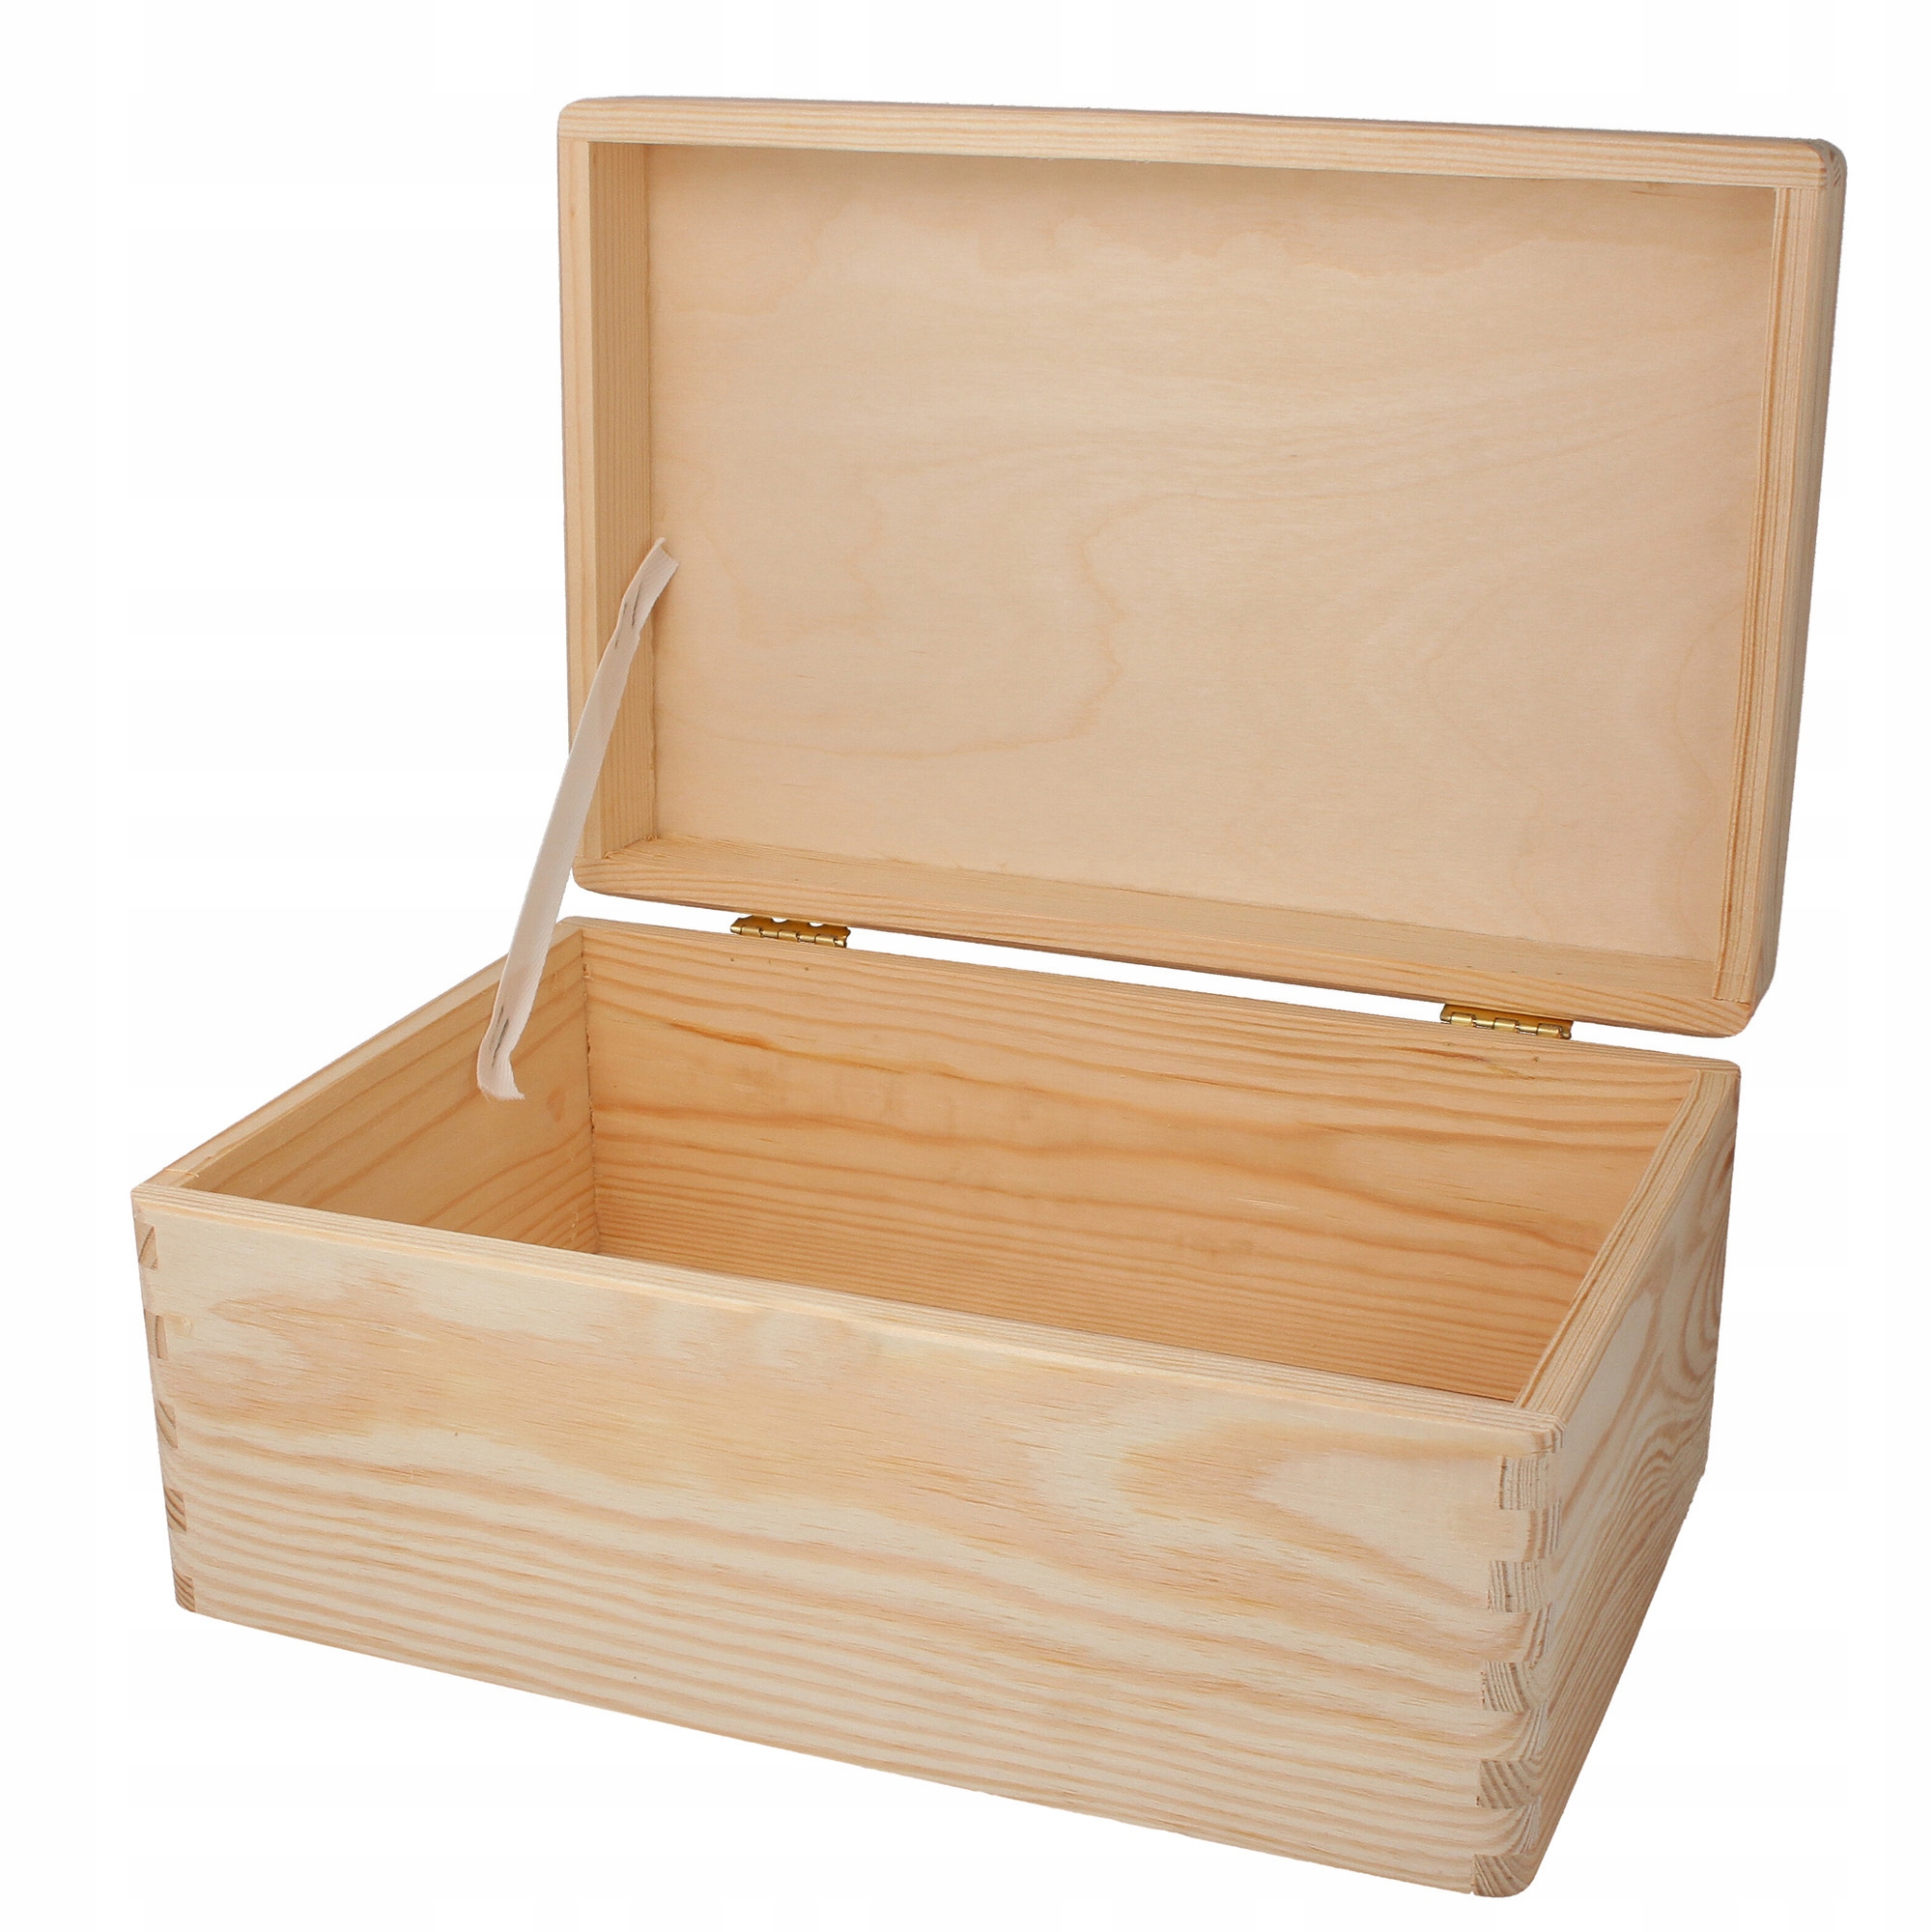 Деревянная коробка с крышкой. Деревянный ящик. Деревянный ящик с крышкой. Деревянный короб с крышкой. Коробка деревянная.